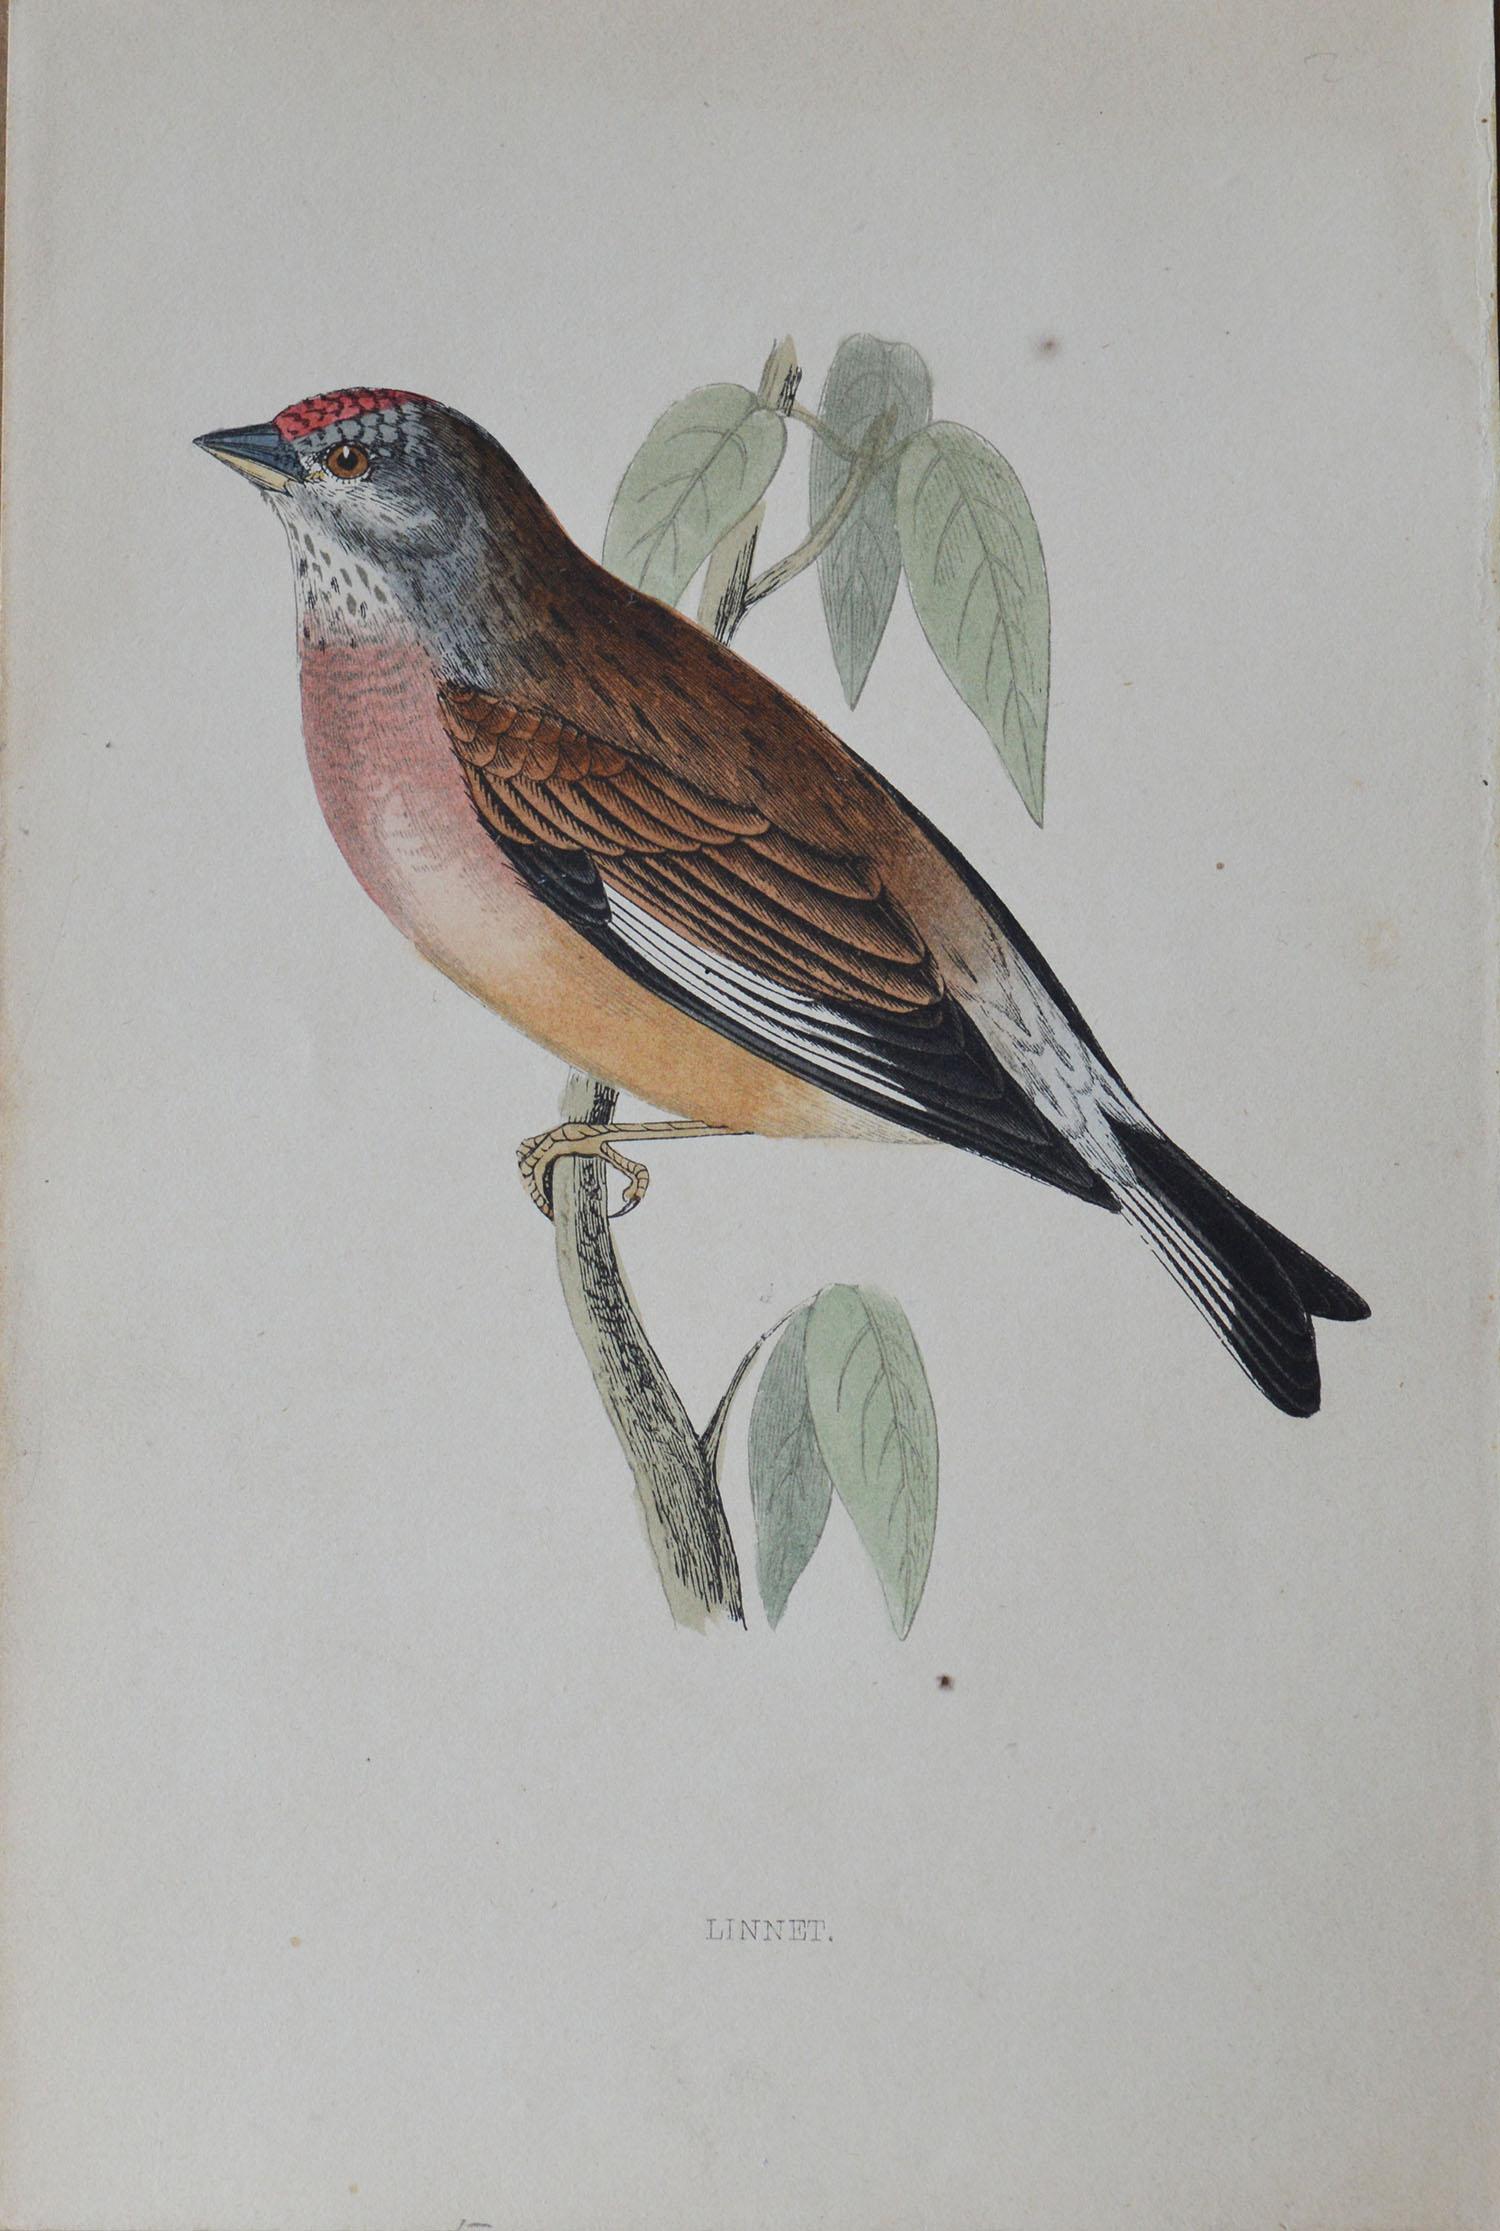 Folk Art Original Antique Bird Print, the Linnet, circa 1850